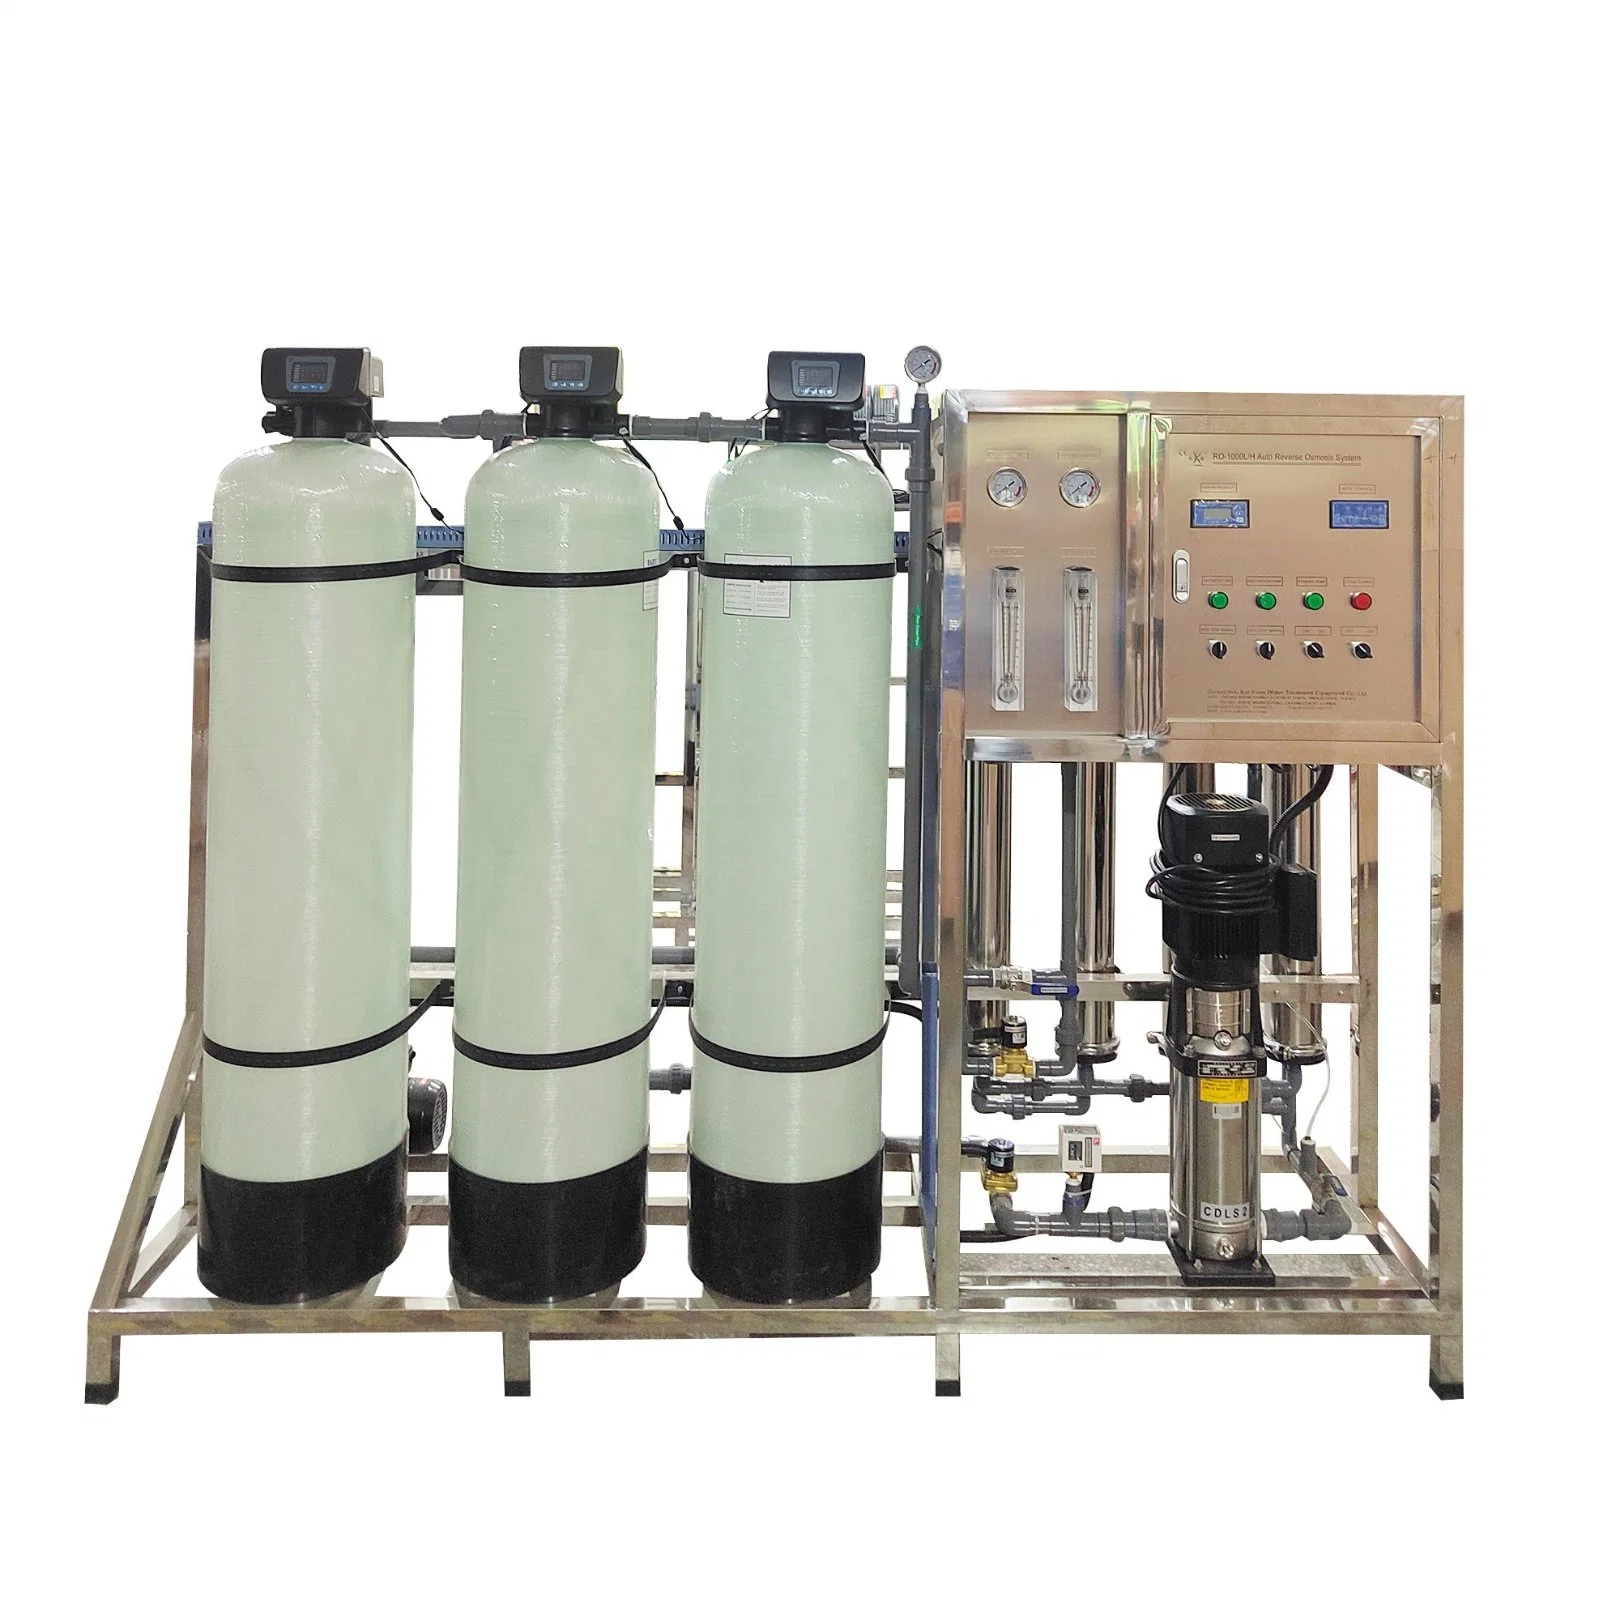 1000zg система обратного осмоса фильтр для очистки фильтра воды опреснение воды оборудование системы очистки воды RO питьевой воды